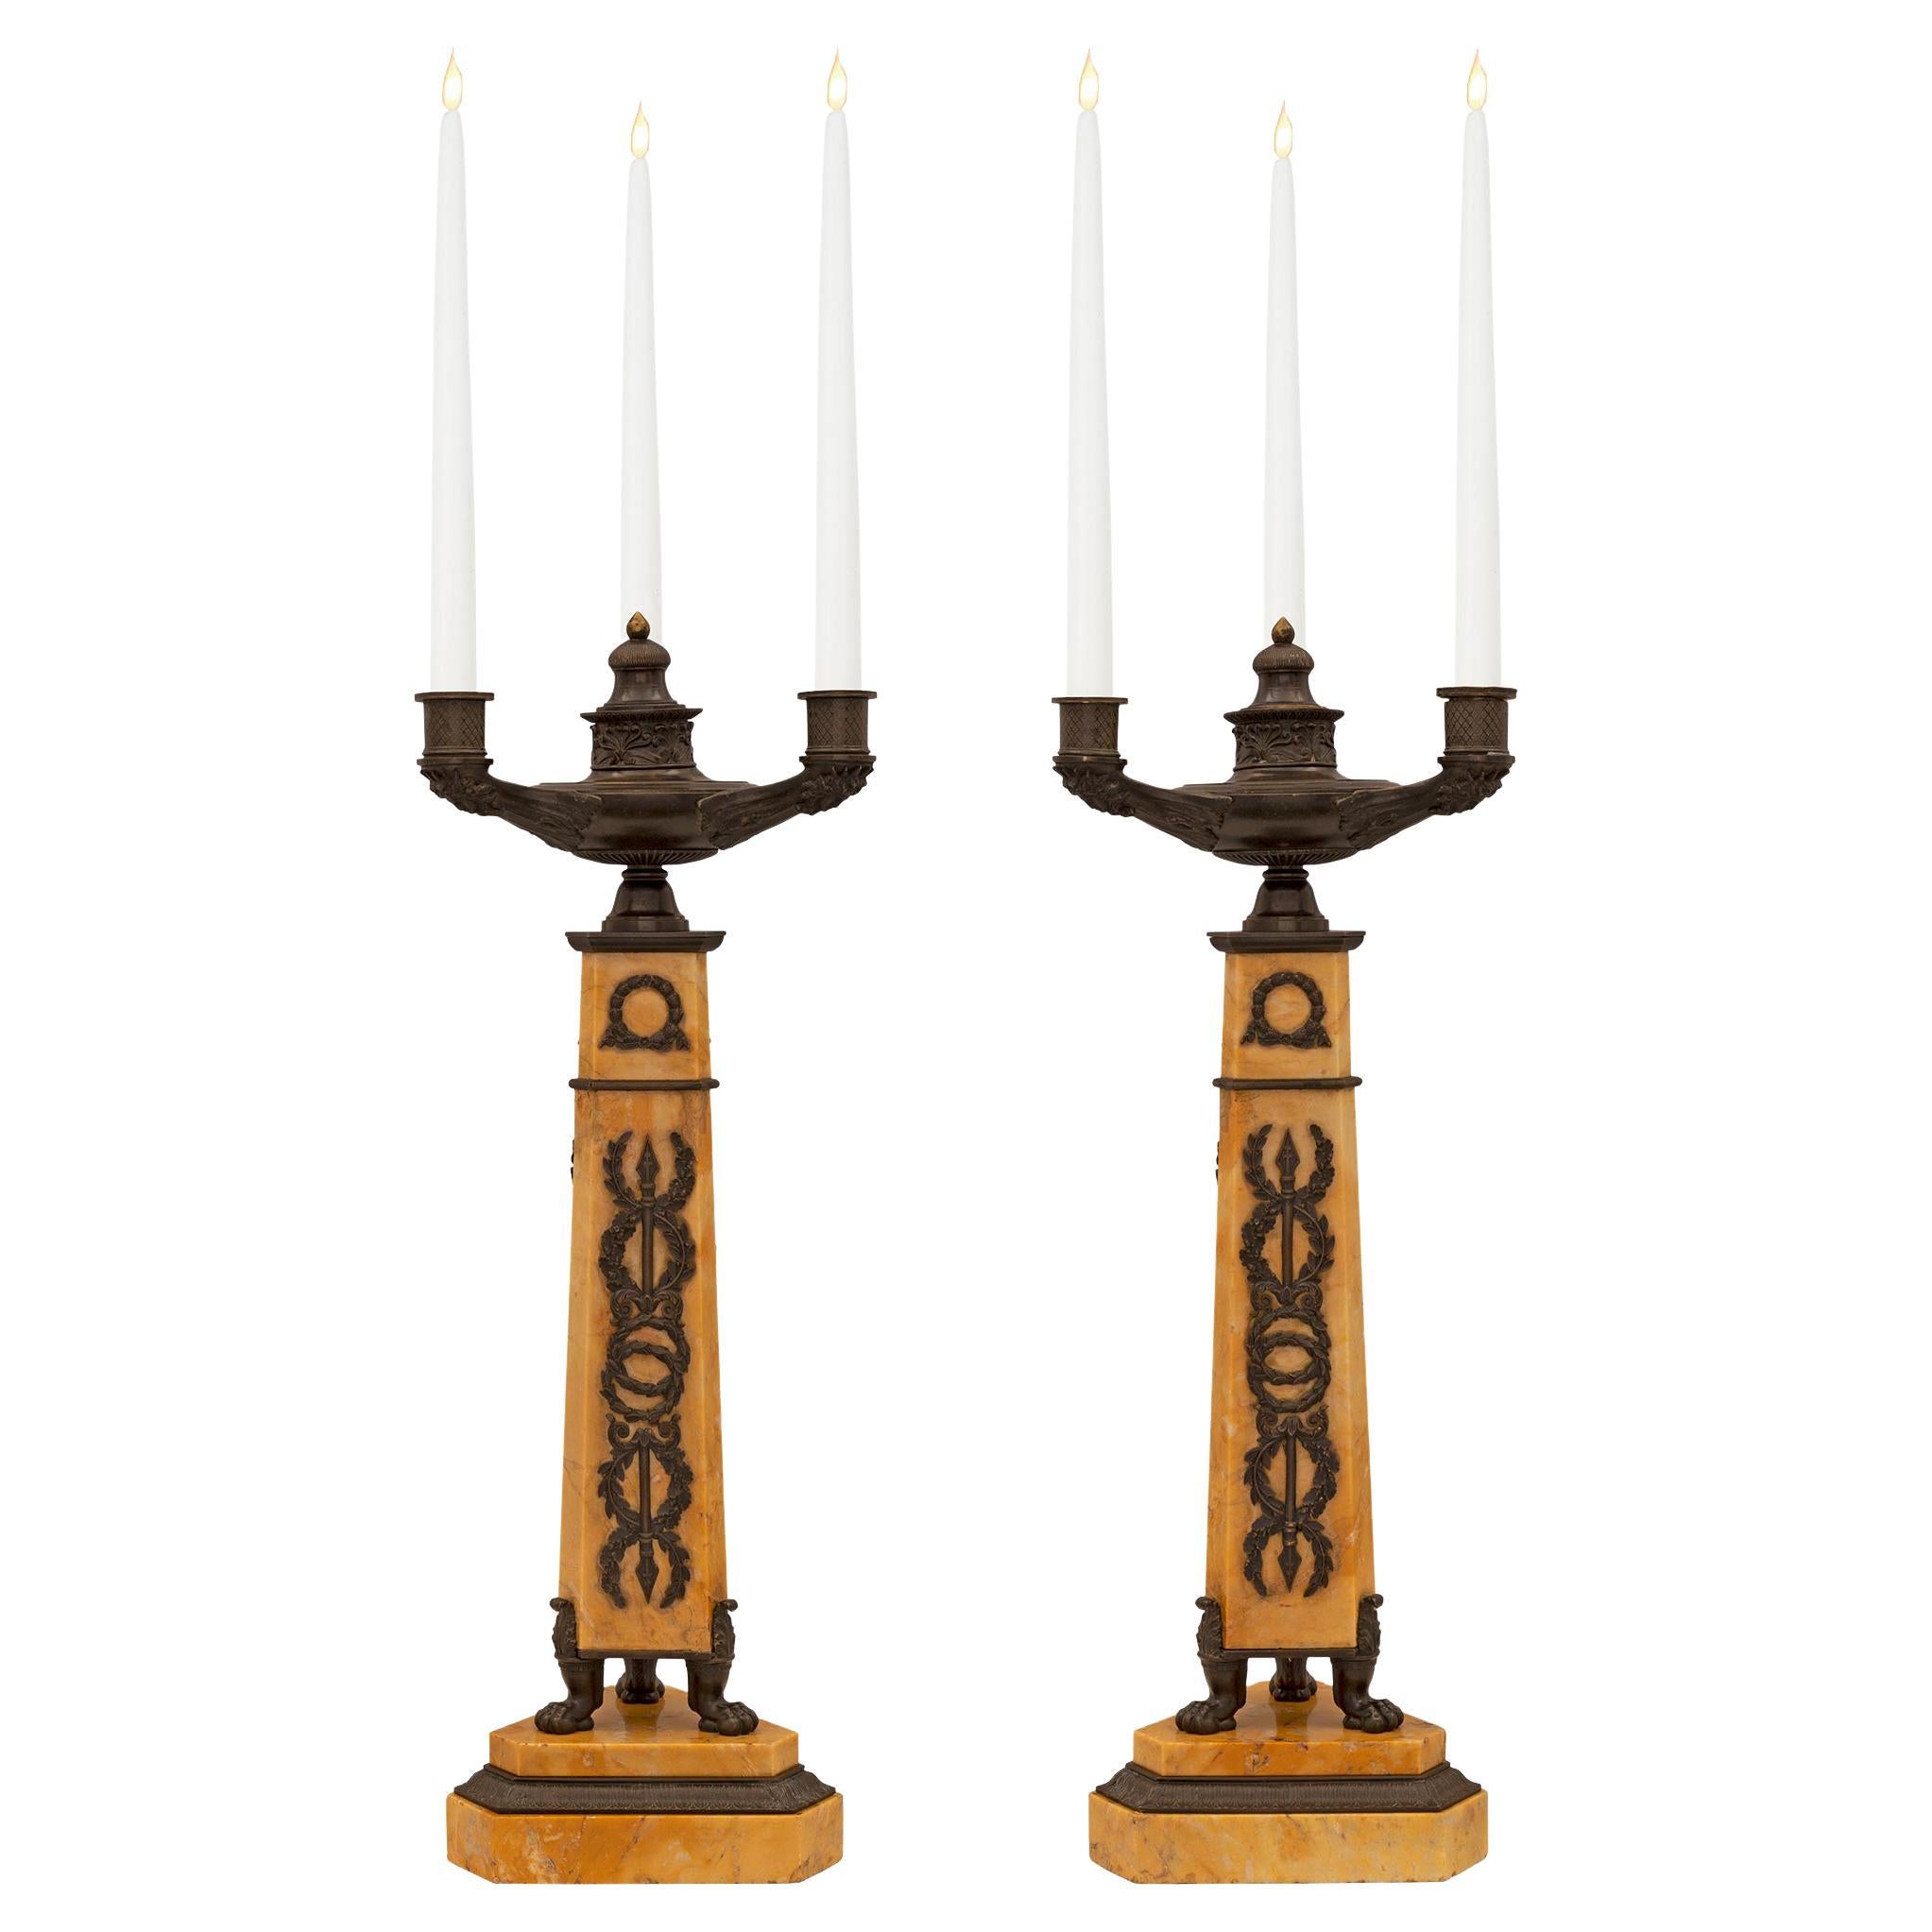 Paire de candélabres de style néo-classique français du 19ème siècle en bronze et marbre